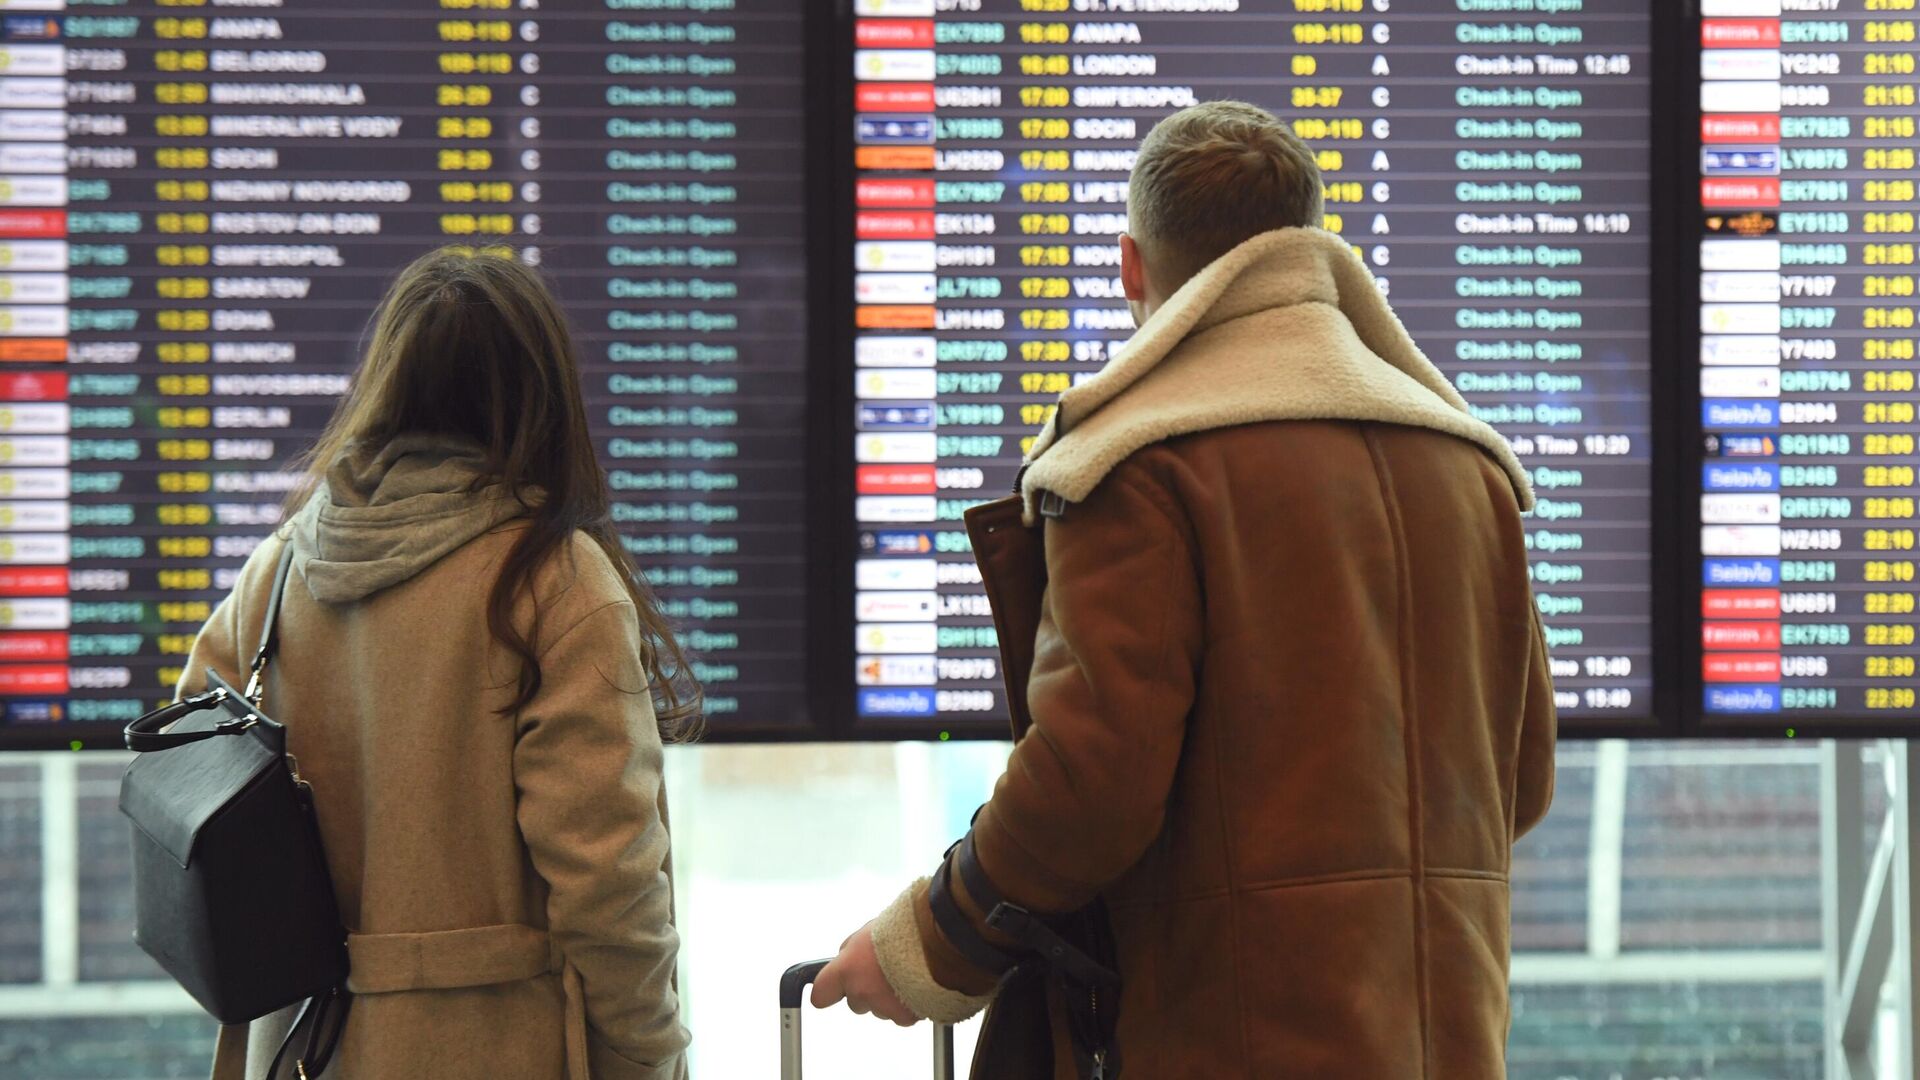 Пассажиры смотрят информационное табло в аэропорту  - РИА Новости, 1920, 21.01.2021